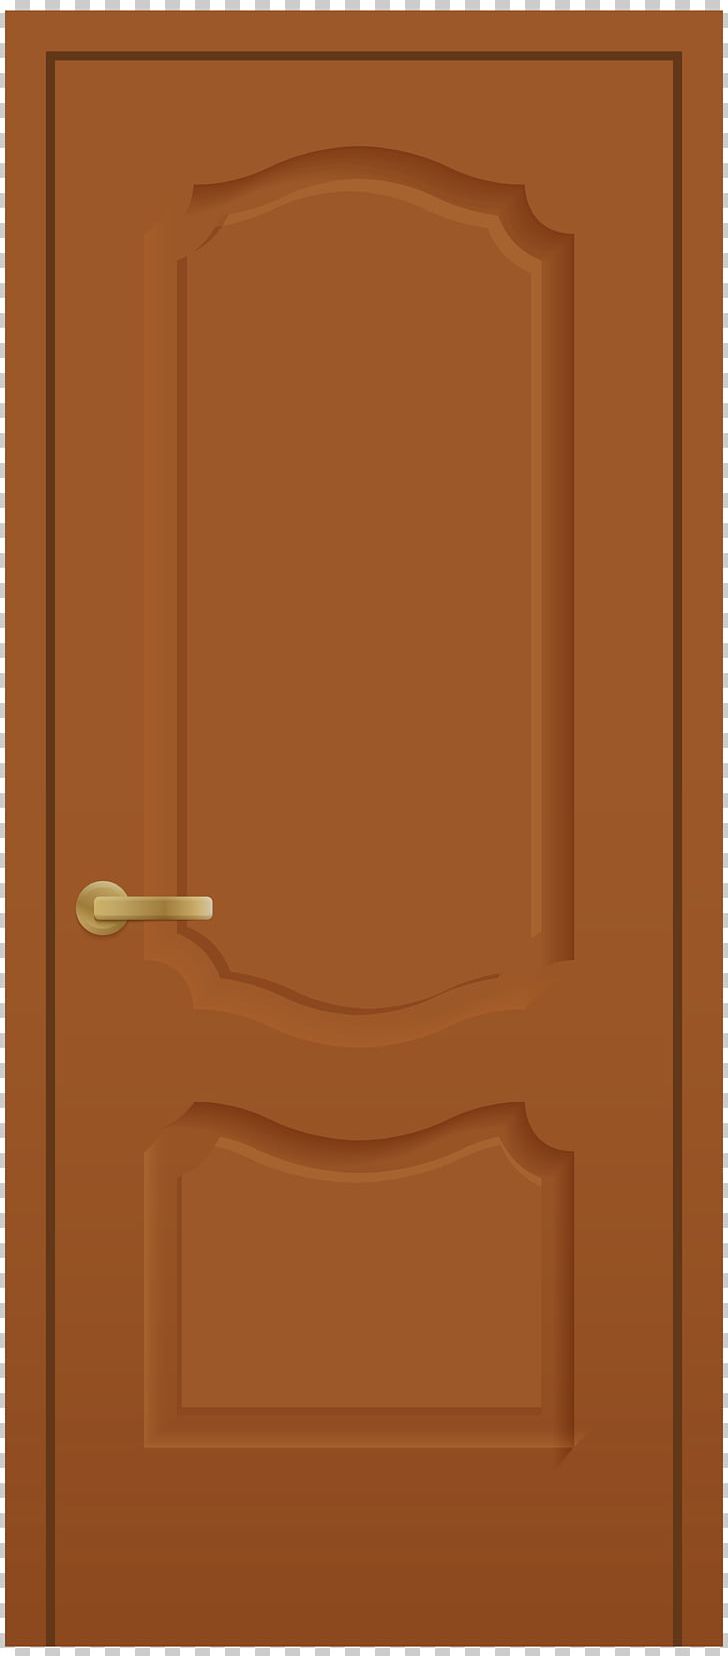 Door Window PNG, Clipart, Angle, Brown, Computer Icons, Door, Furniture Free PNG Download